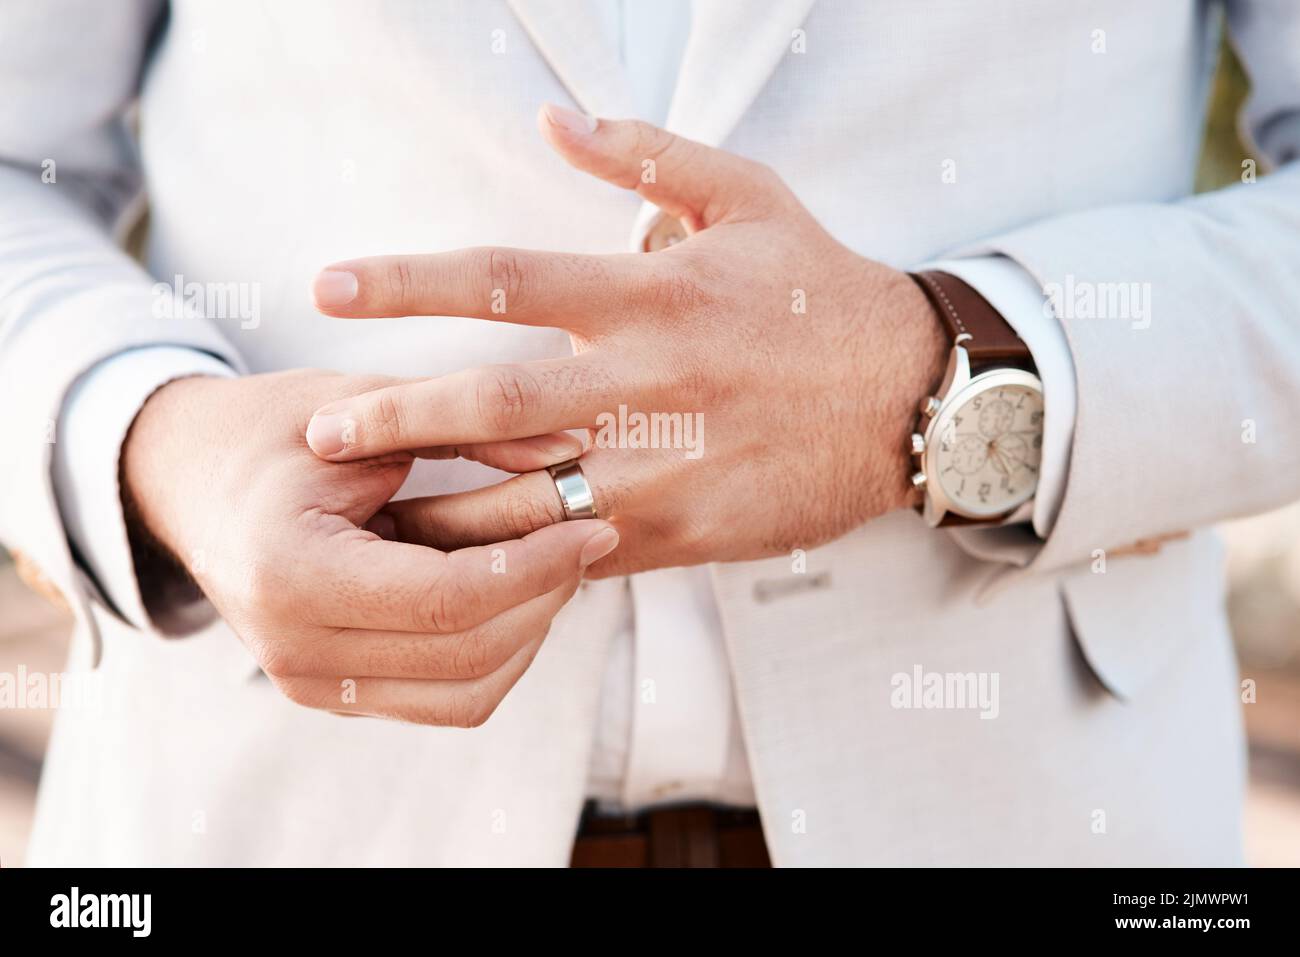 Este anillo de bodas es un símbolo de un compromiso de por vida. Un novio irreconocible ajustando su anillo el día de su boda. Foto de stock